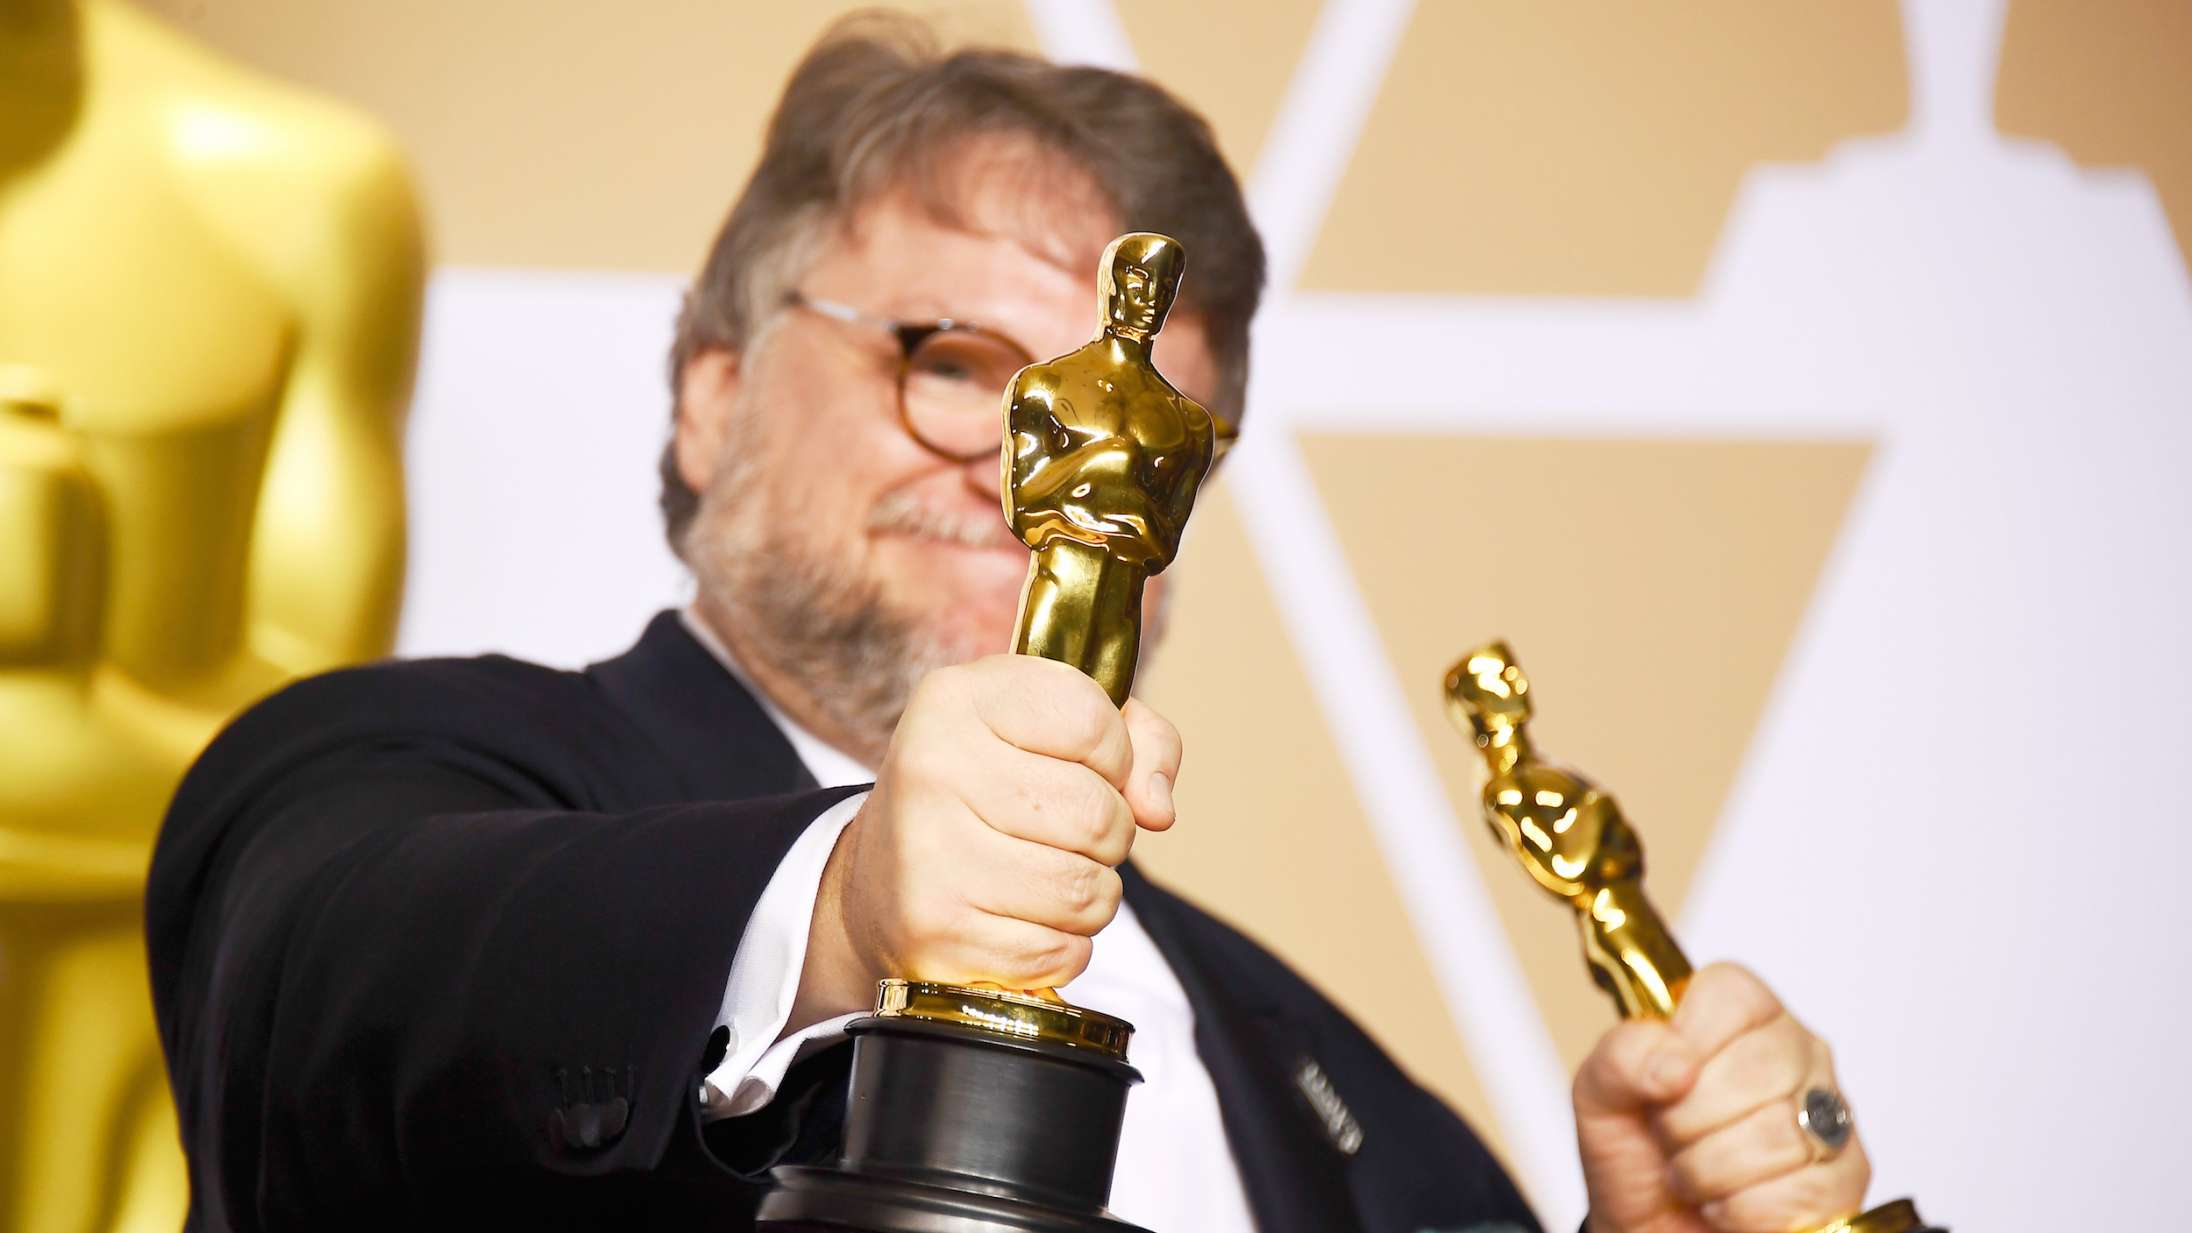 Årets Oscar-statuetter er uddelt – se hele vinderlisten